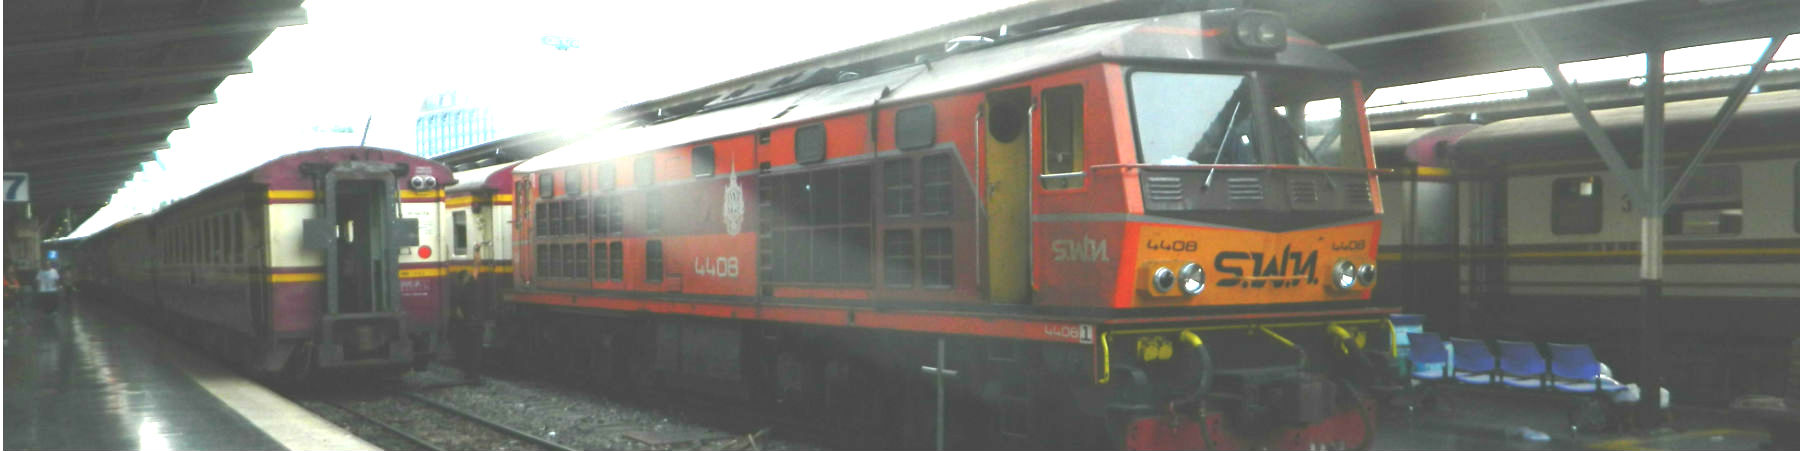 Alsthom ADD (1985) Locomotive Stock - Engine 4408